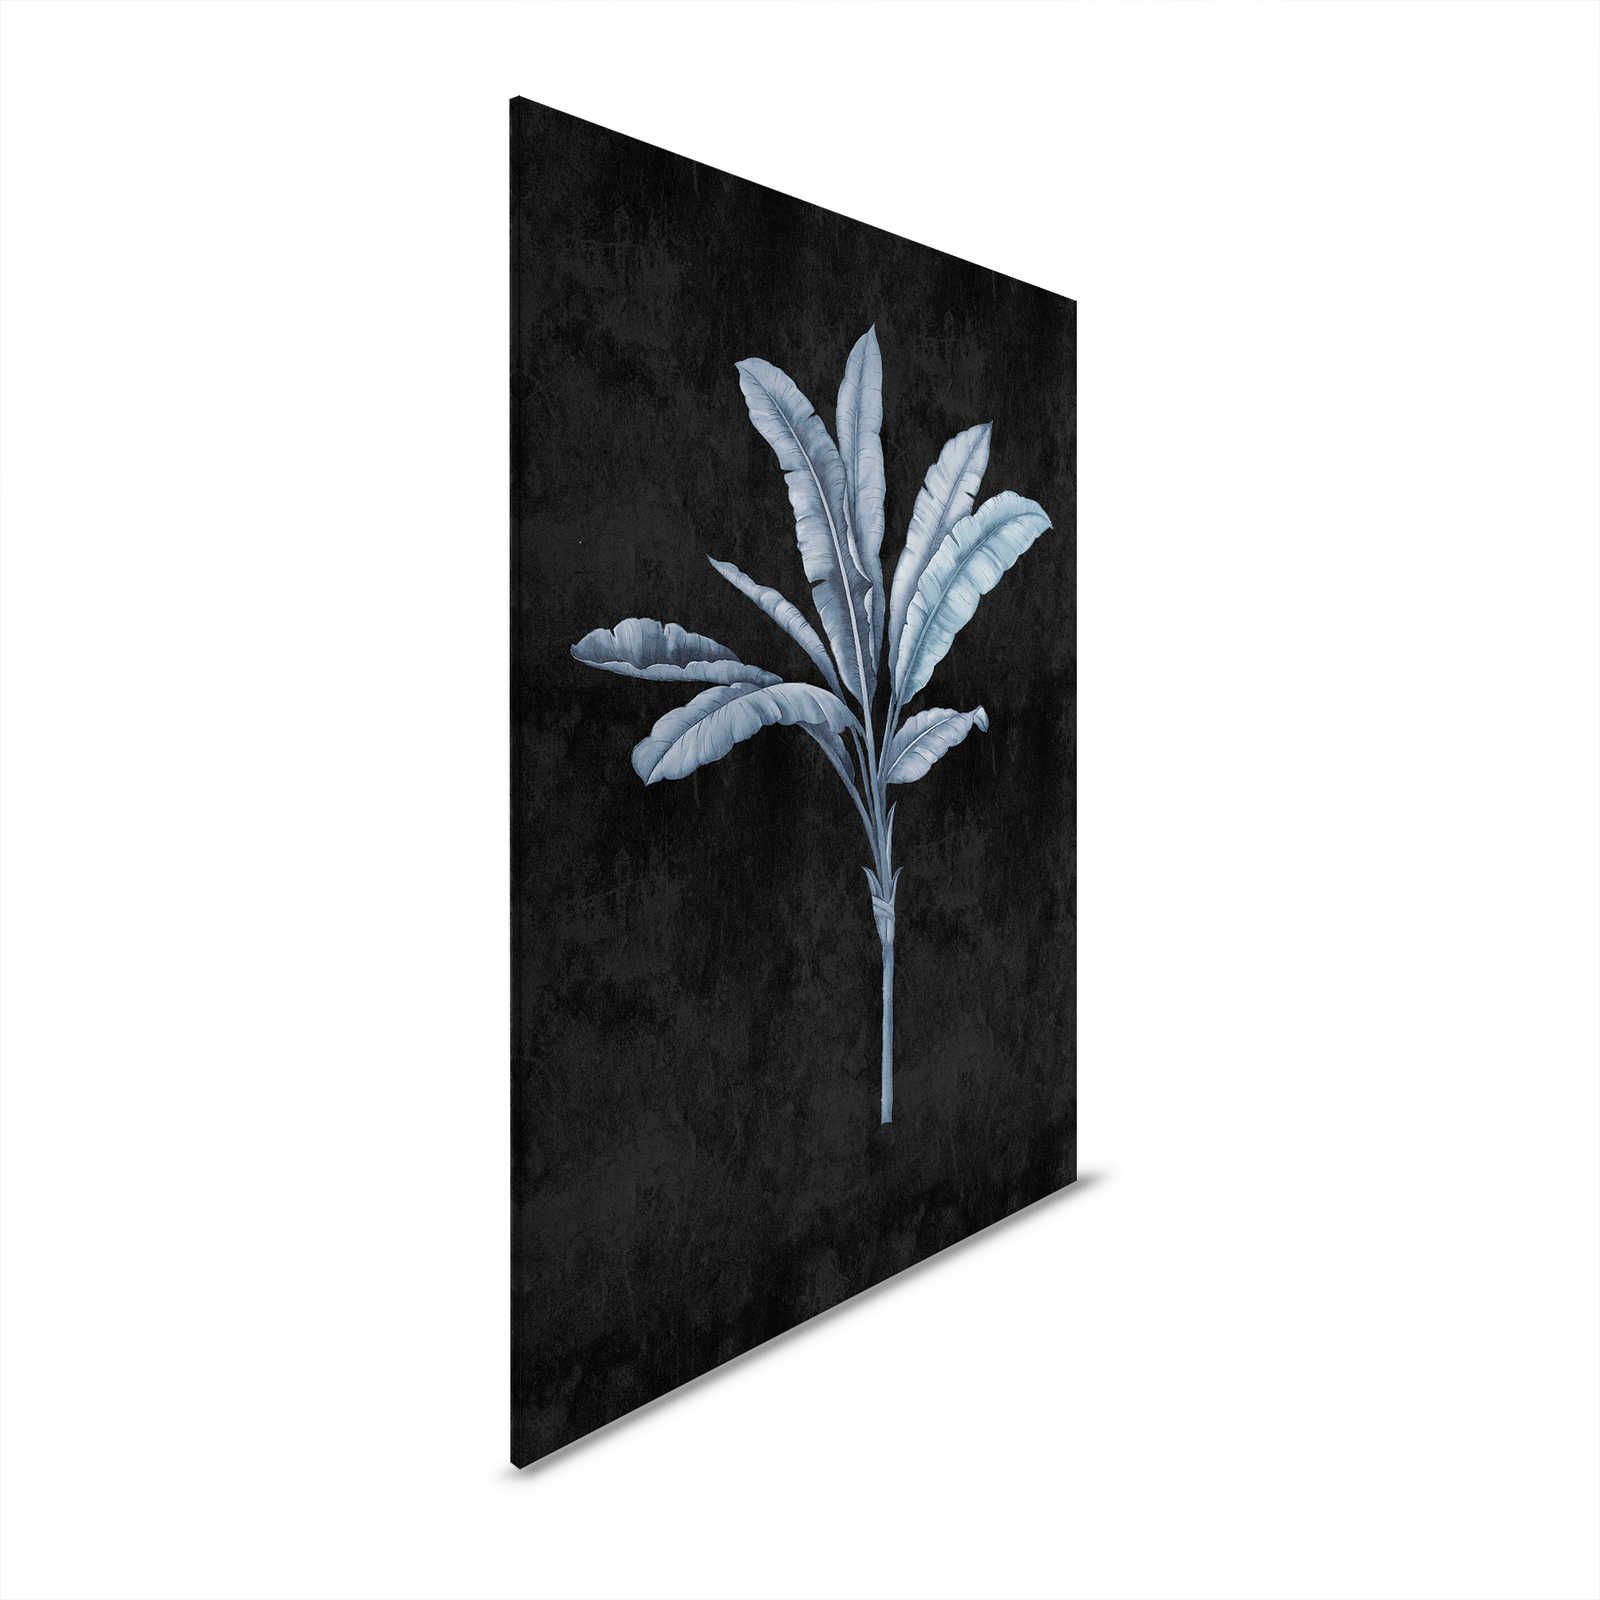 Fiji 2 - Toile noire avec motif de palmiers bleu-gris - 0,60 m x 0,90 m
